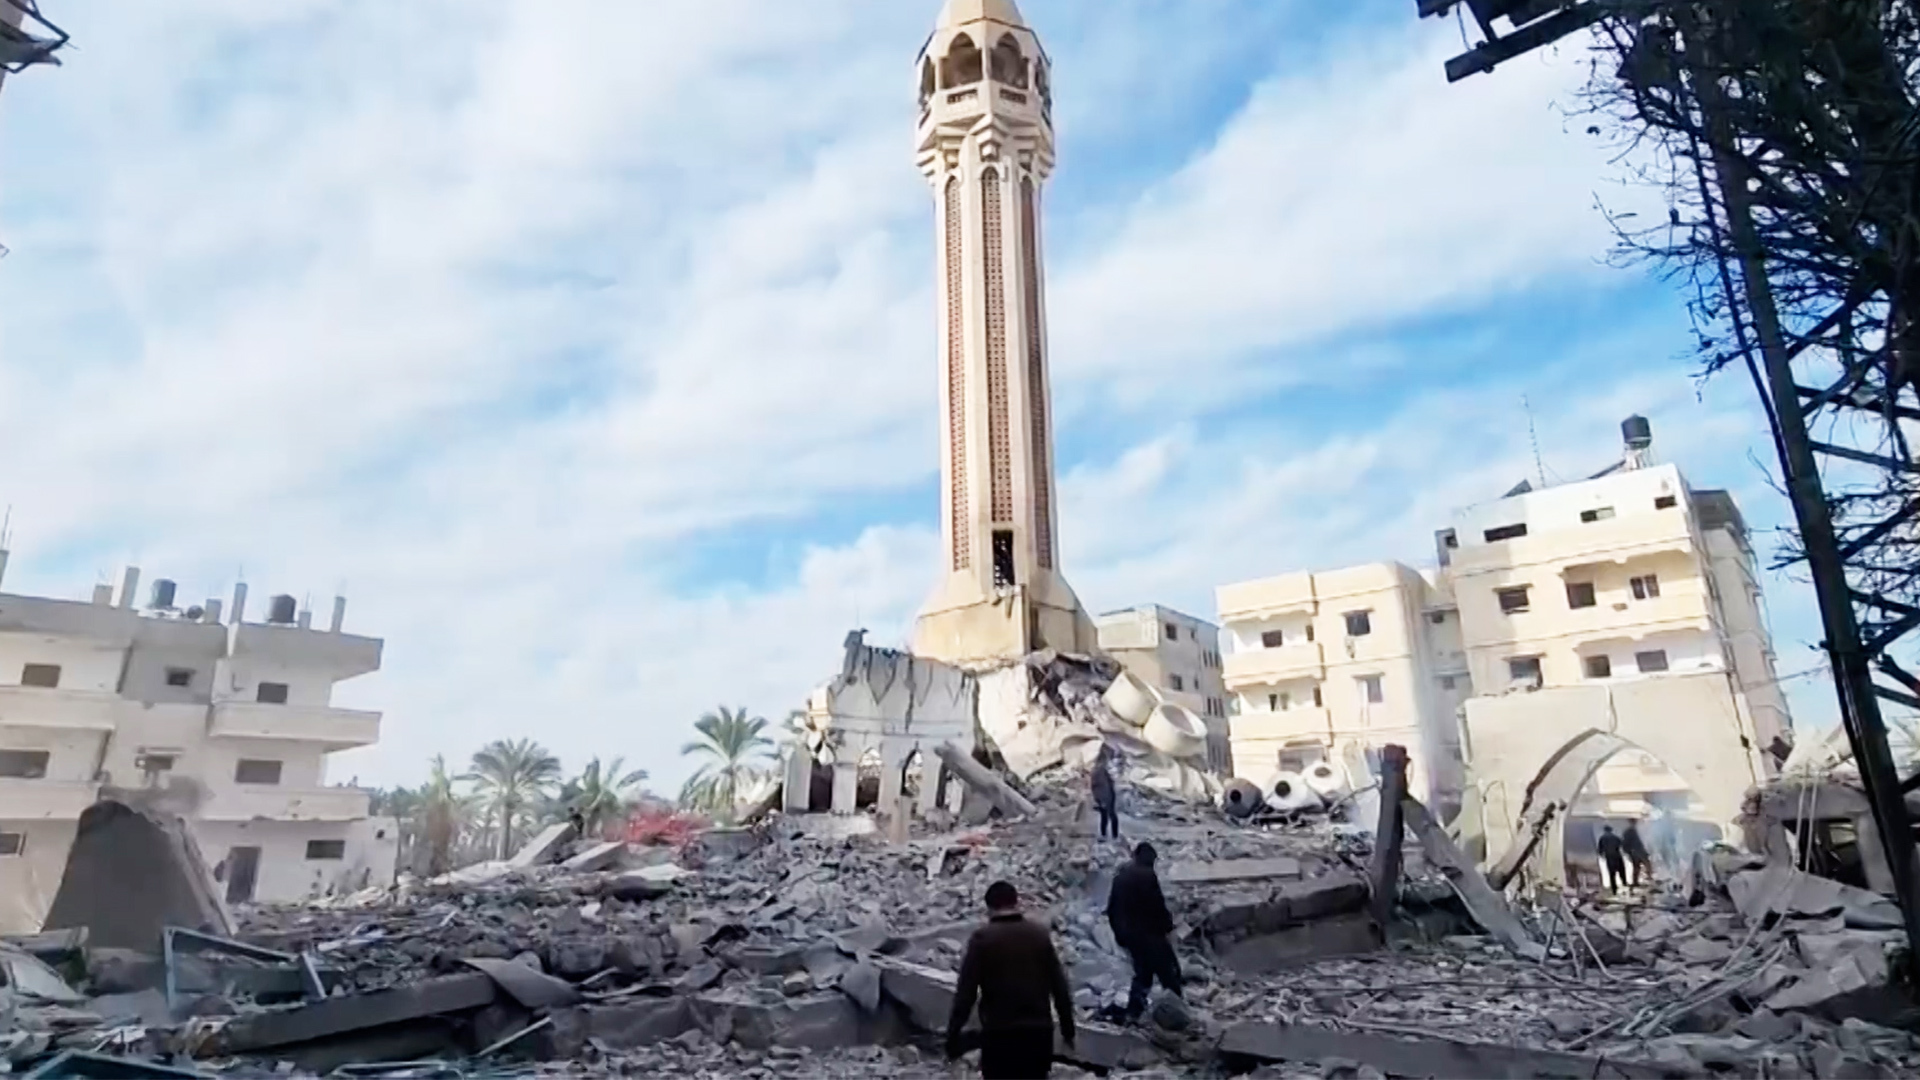 طائرات الاحتلال تدمر أحد أكبر مساجد دير البلح وسط القطاع | أخبار – البوكس نيوز